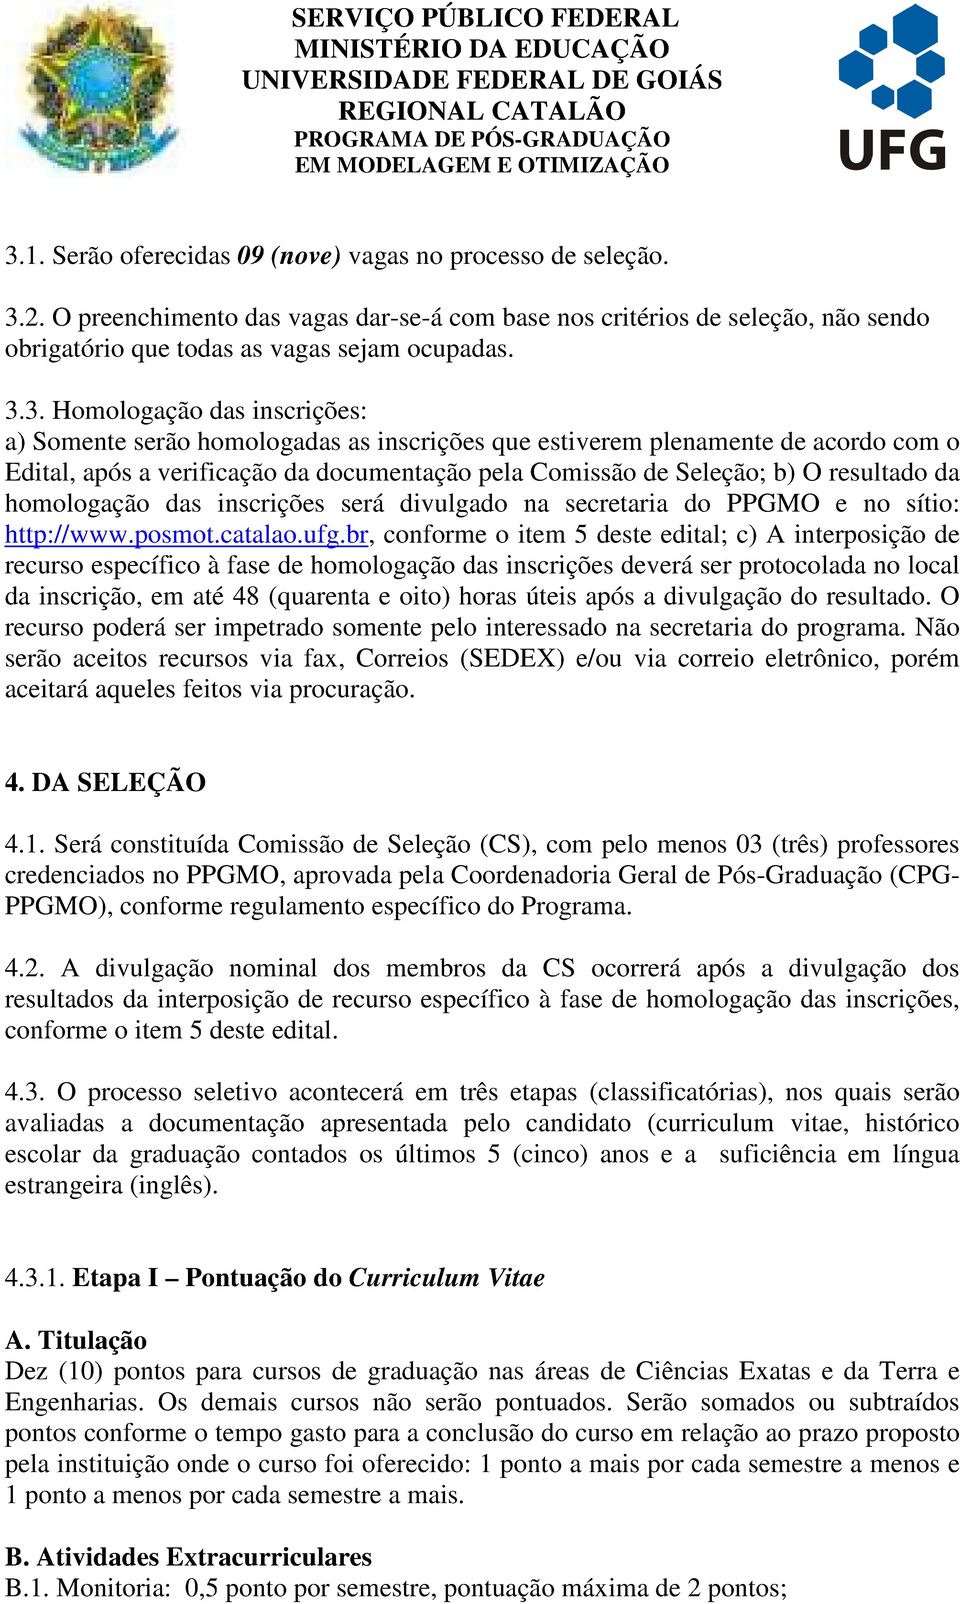 homologação das inscrições será divulgado na secretaria do PPGMO e no sítio: http://www.posmot.catalao.ufg.